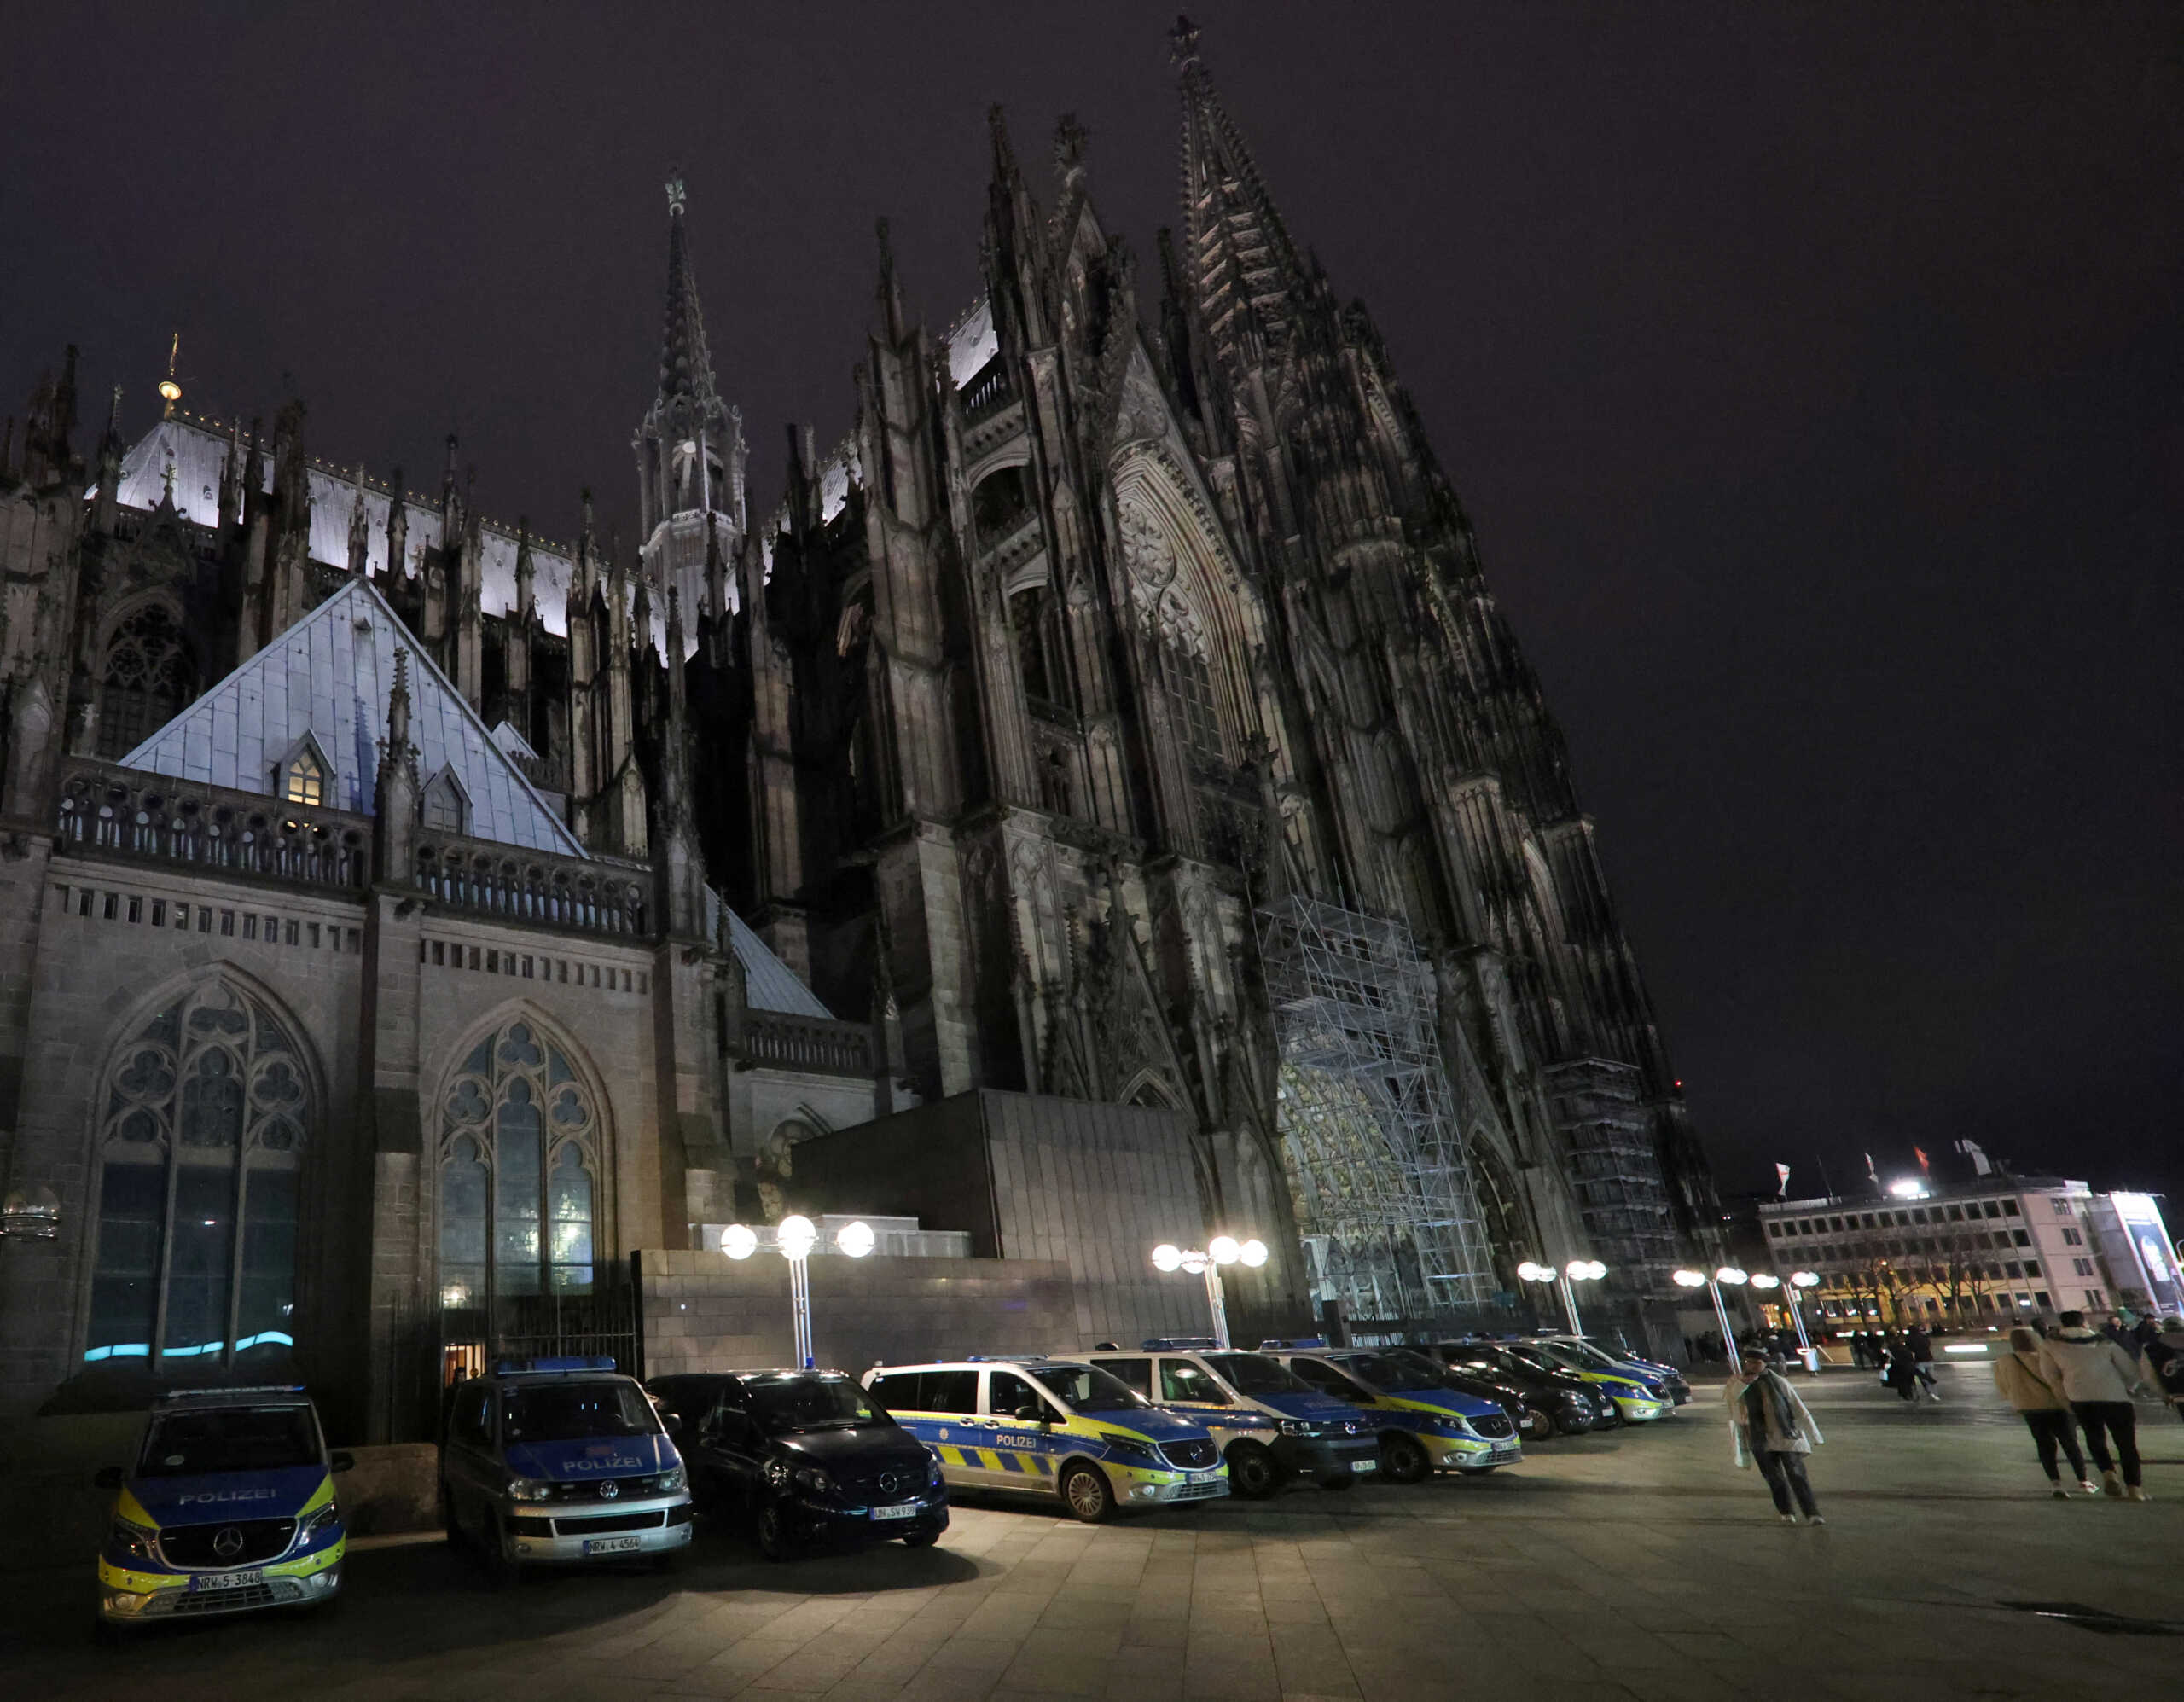 Γερμανία: Έρευνα της αστυνομίας στον καθεδρικό ναό της Κολονίας έπειτα από πληροφορίες για επίθεση